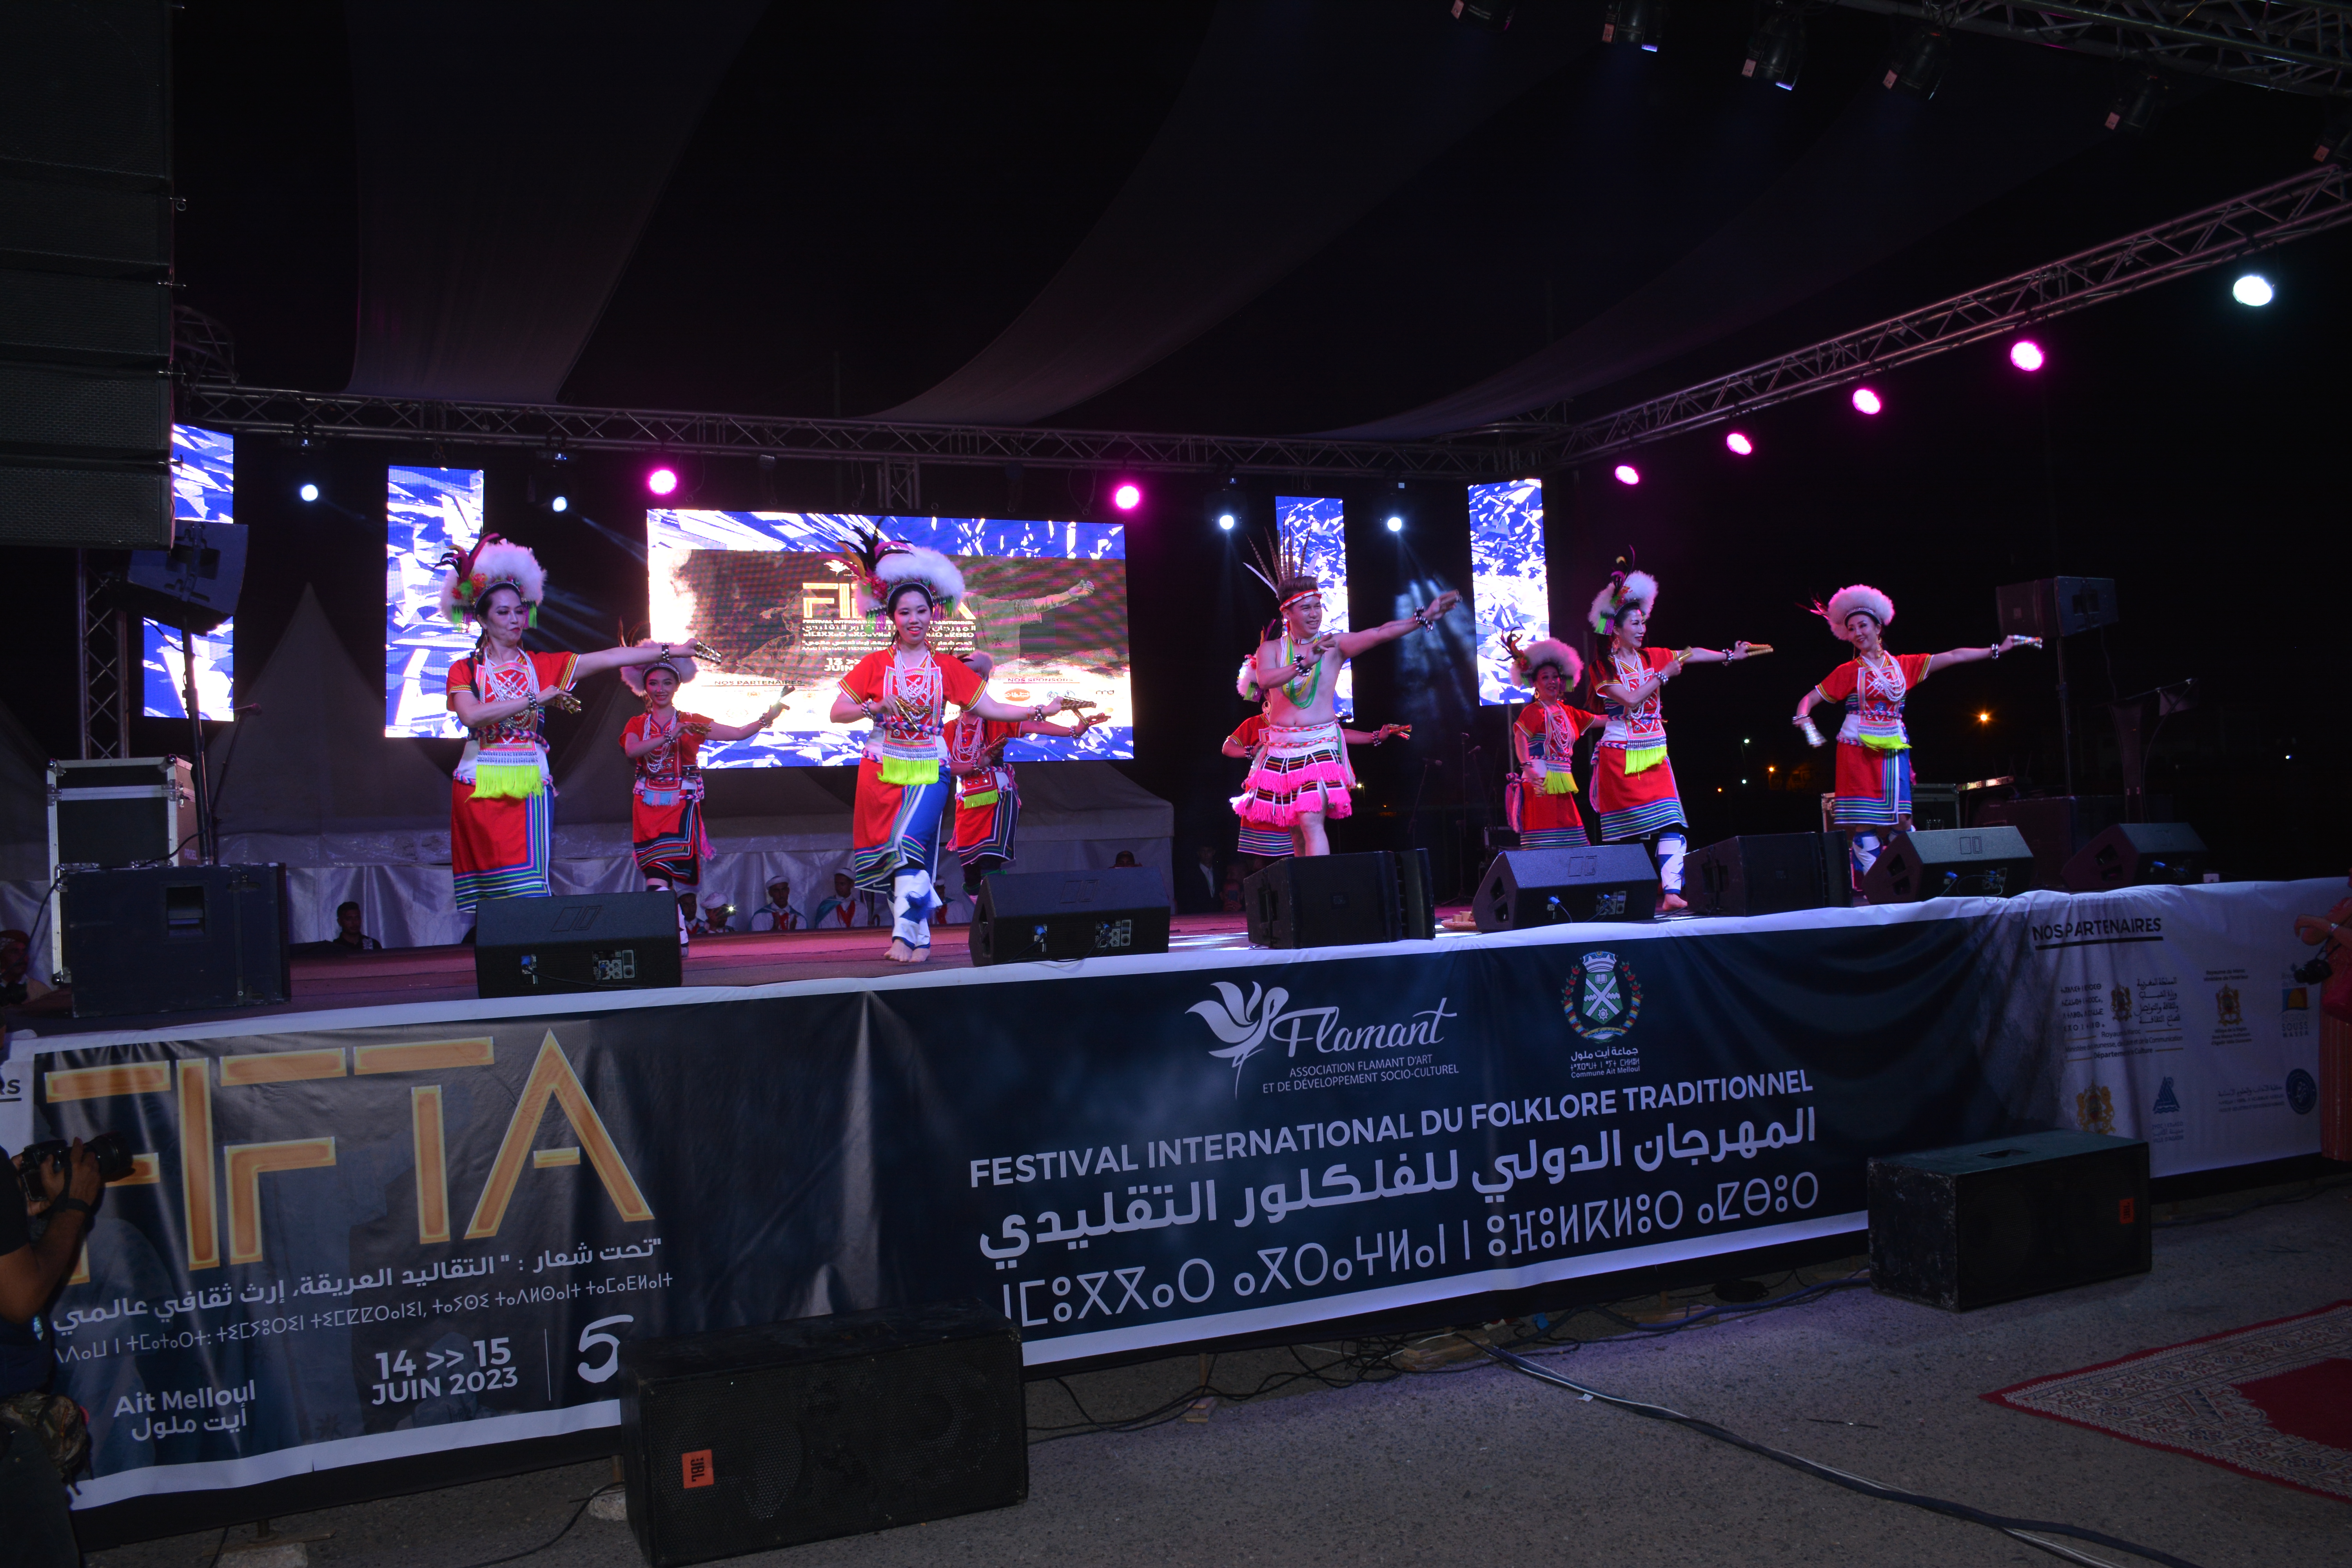 افتتاح فعاليات الدورة الخامسة للمهرجان الدولي للفلكلور التقليدي FIFTA بأيت ملول.